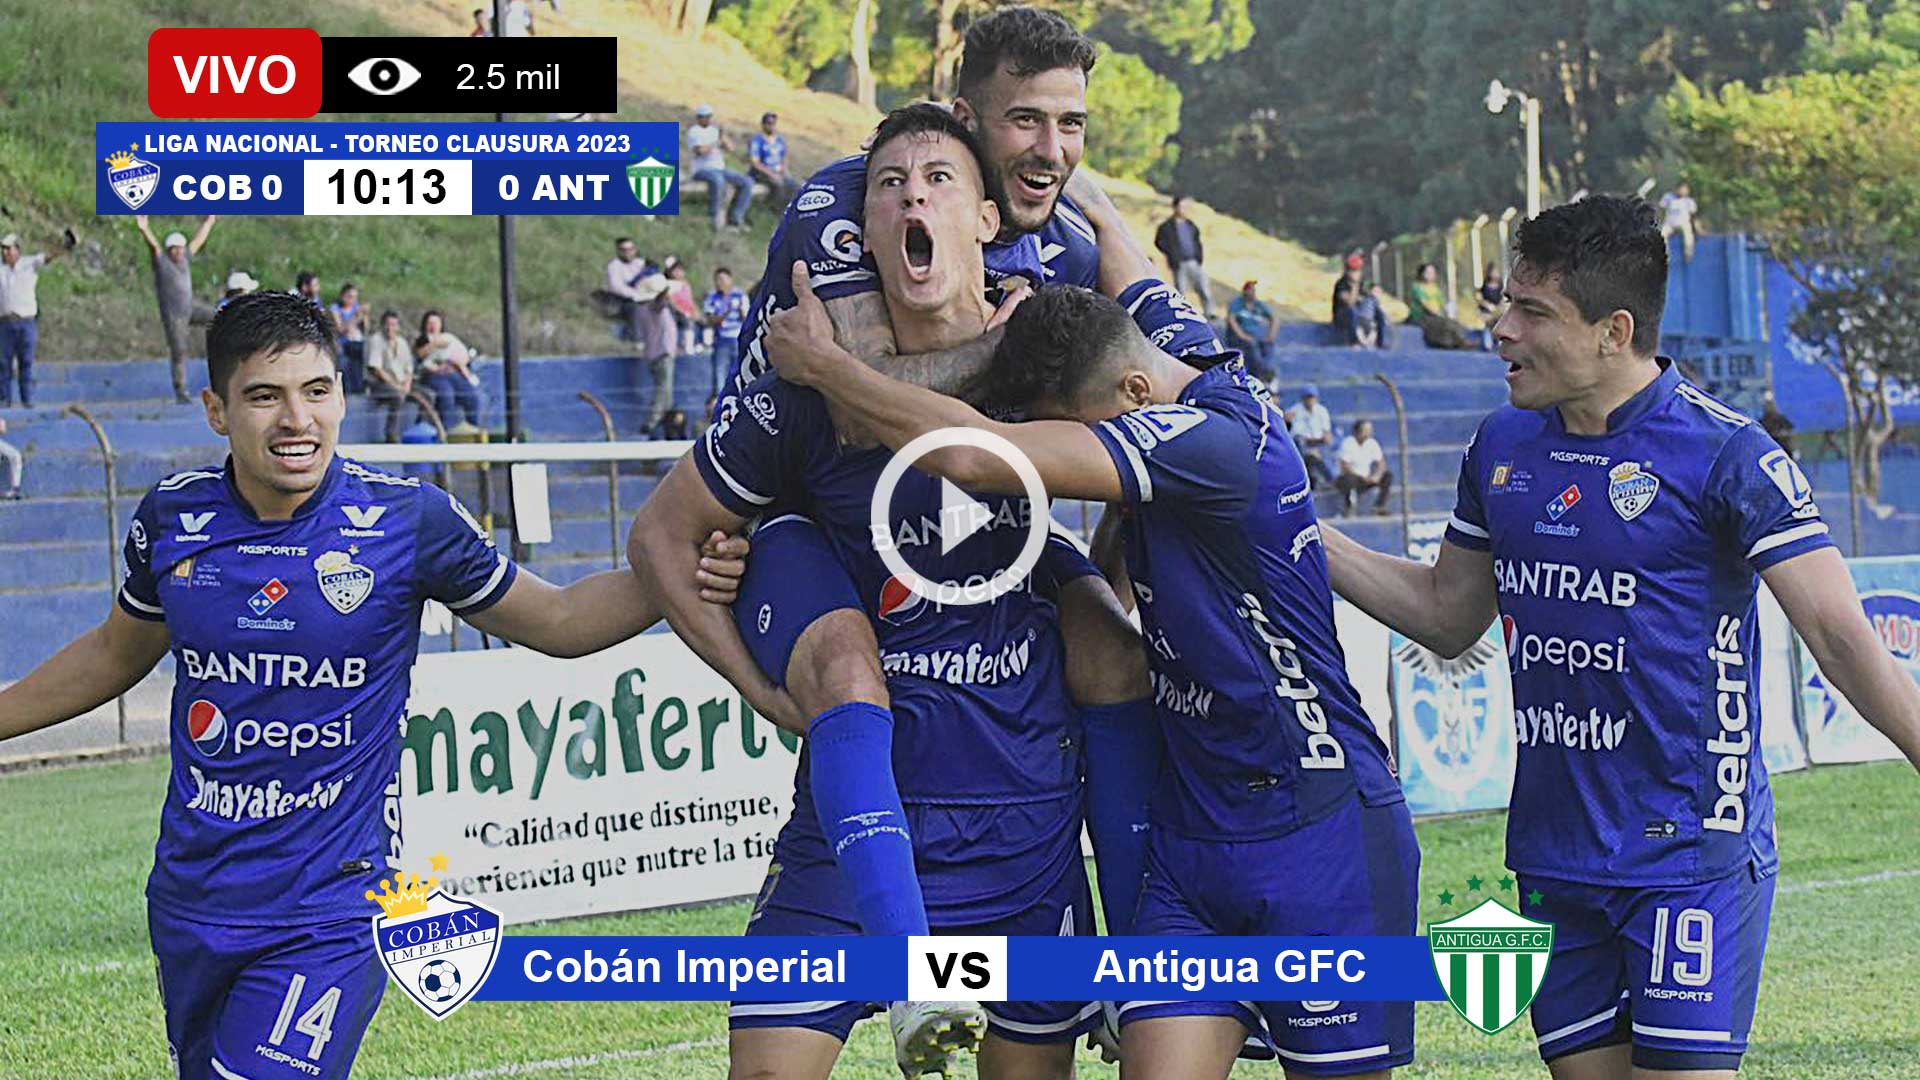 Cobán-Imperial-vs-Antigua-en-vivo-online-gratis-por-internet